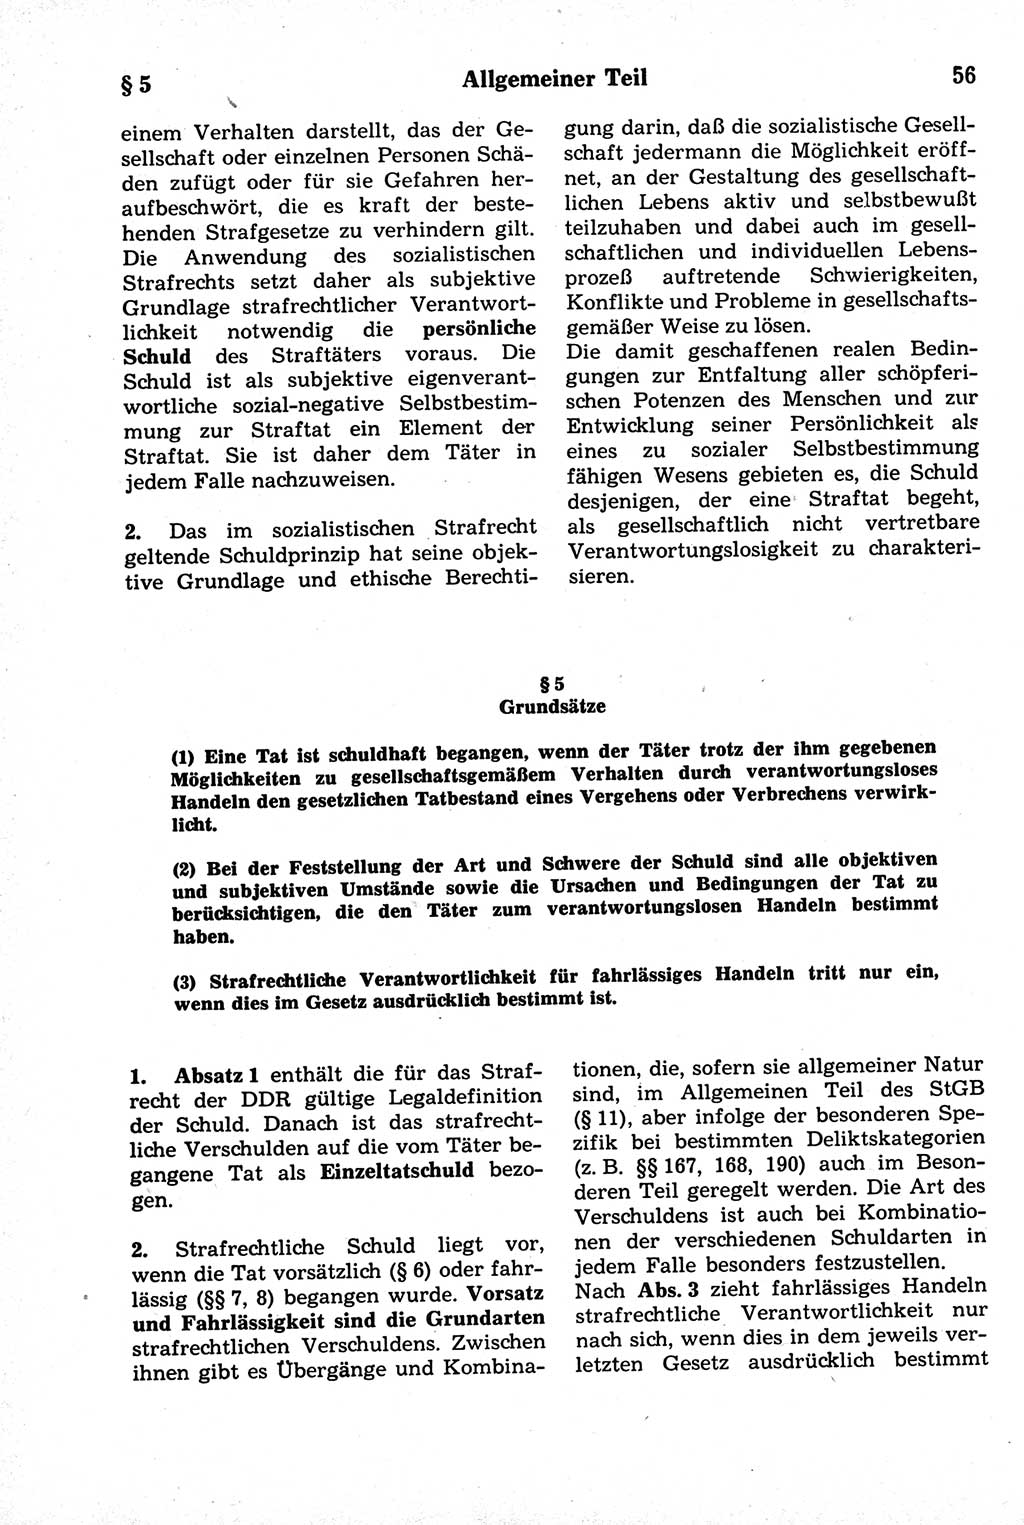 Strafrecht der Deutschen Demokratischen Republik (DDR), Kommentar zum Strafgesetzbuch (StGB) 1981, Seite 56 (Strafr. DDR Komm. StGB 1981, S. 56)